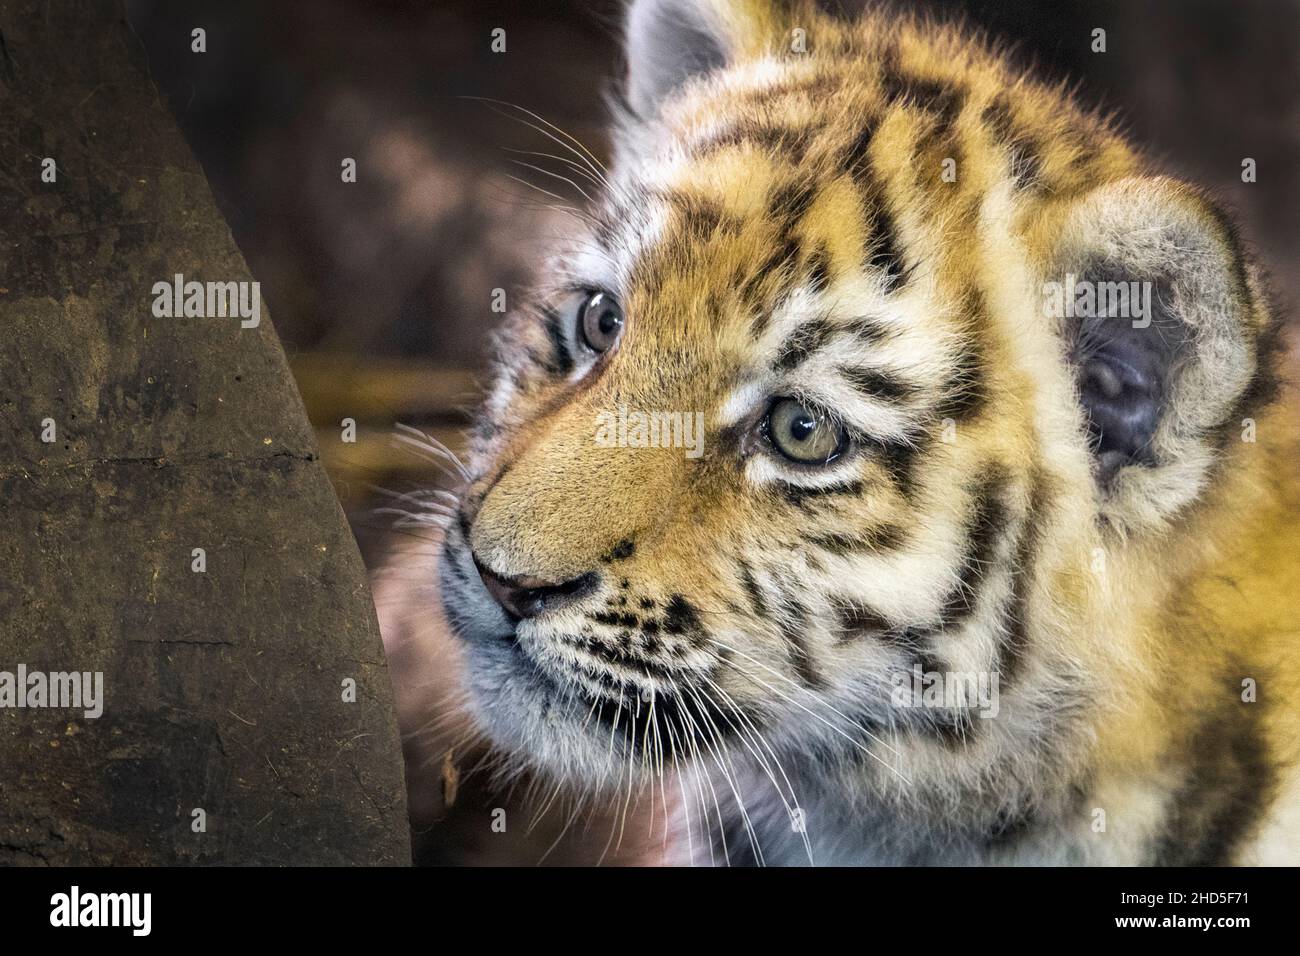 Amur tiger cub (close-up) Stock Photo